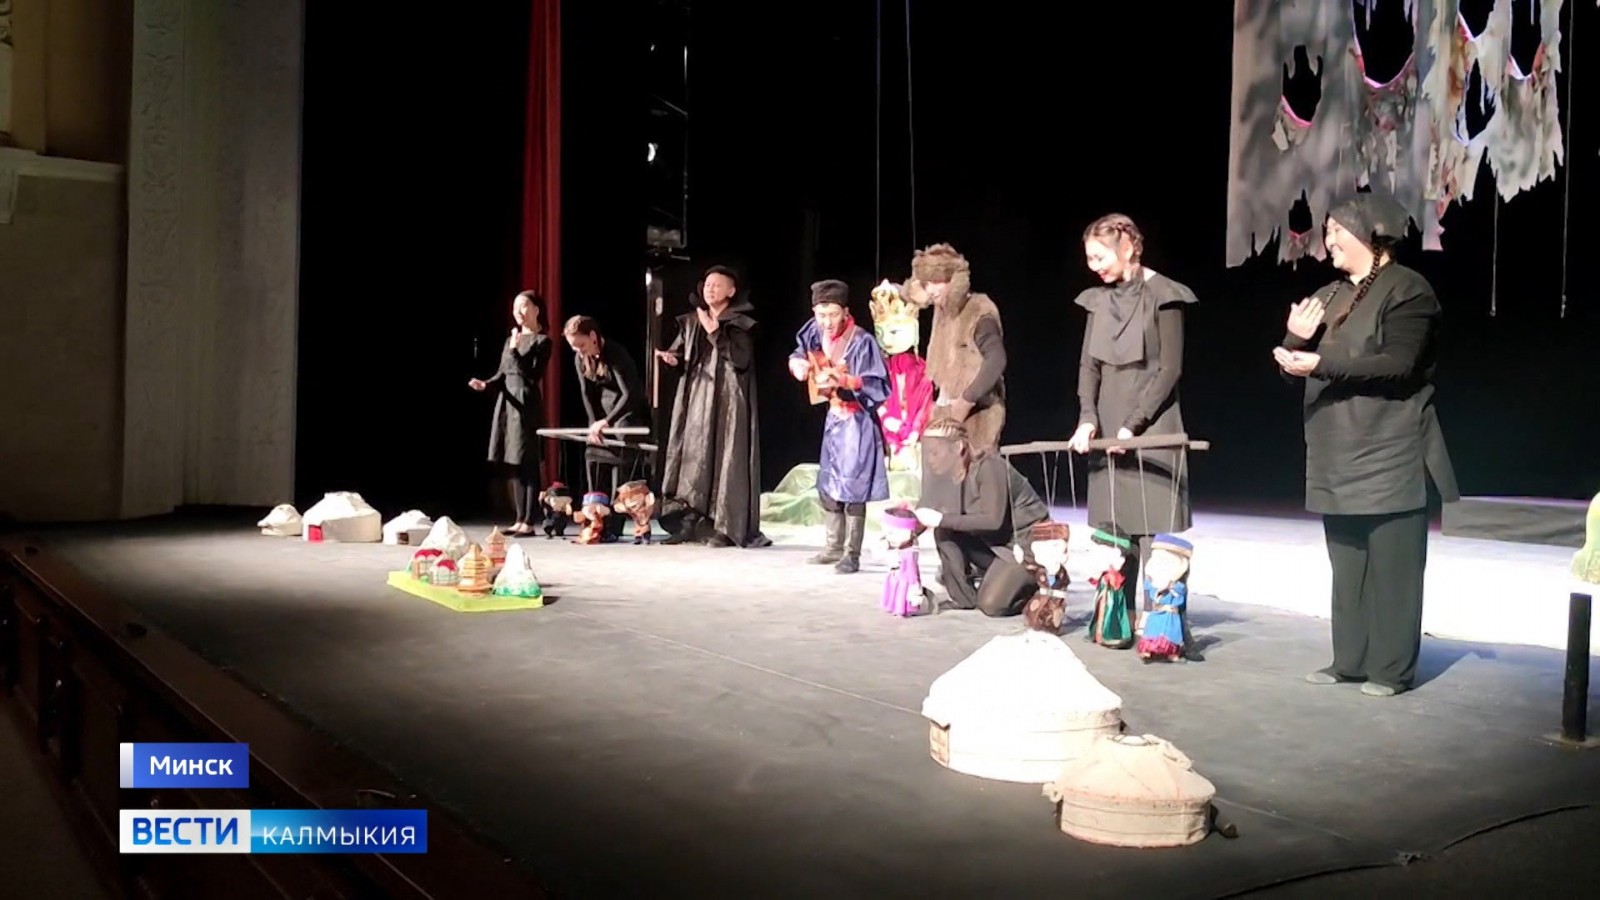 Артисты Национального театра имени Баатра Басангова сегодня завершают выступления на сцене столицы Беларуси